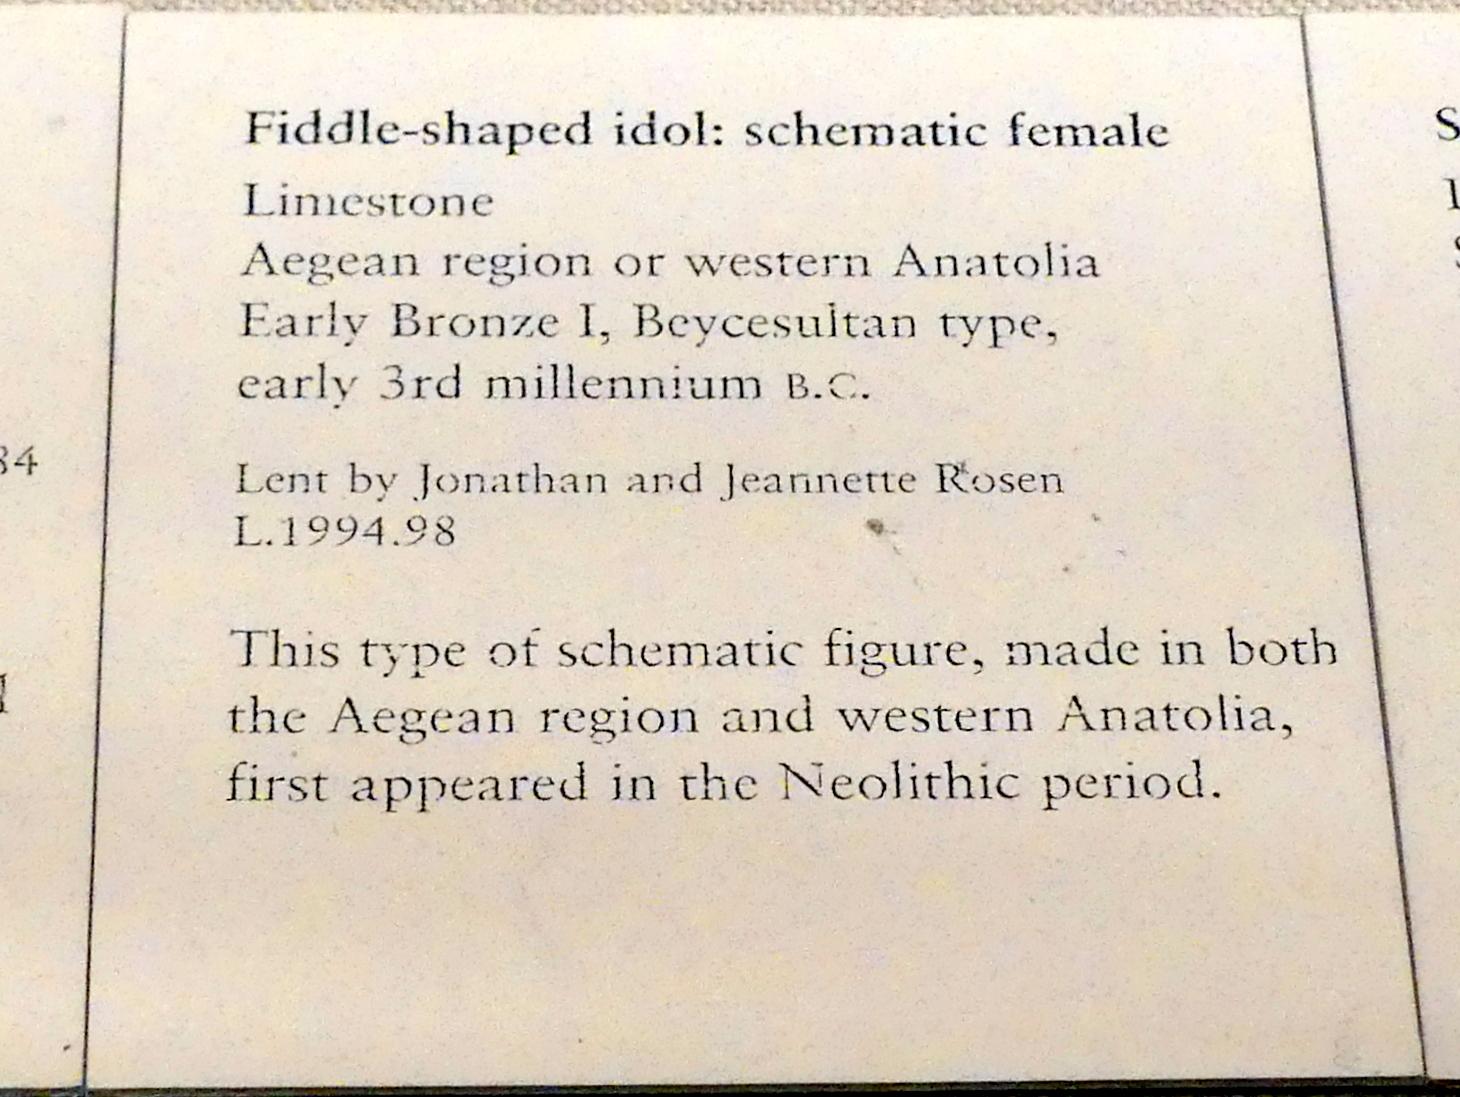 Geigenförmiges Idol: schematische weibliche Figur, Frühe Bronzezeit I, 3000 - 2700 v. Chr., 3000 - 2700 v. Chr., Bild 2/2